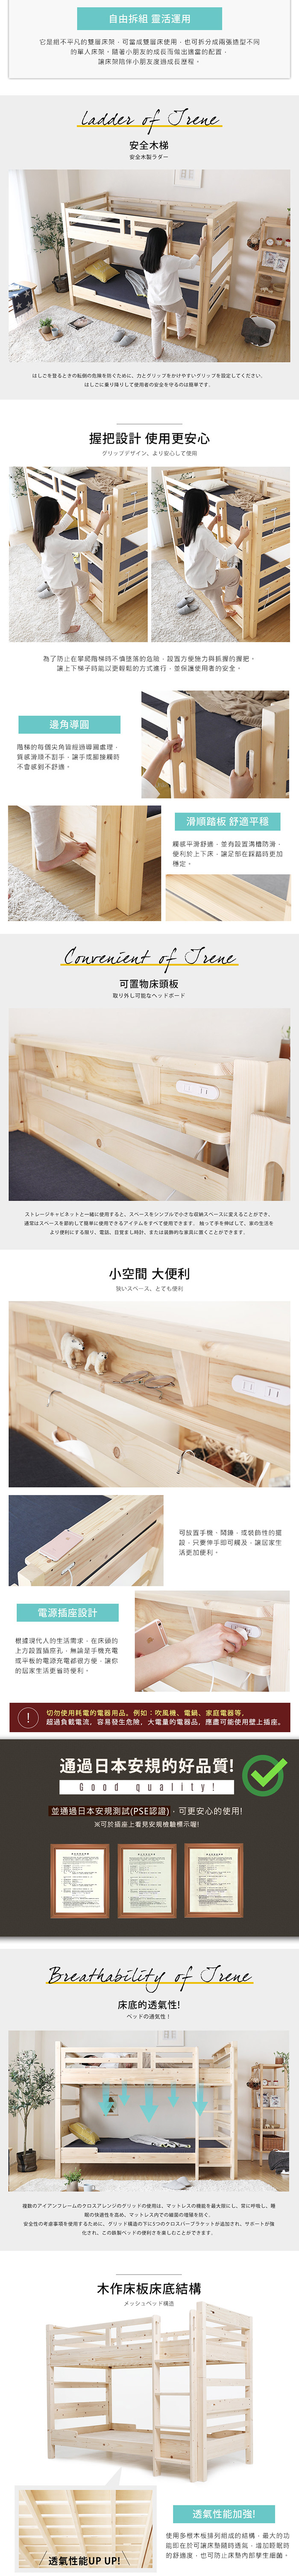 預購9月上旬雙層床 艾琳系列日式清新雙層床架(上下舖) / H&D東稻家居